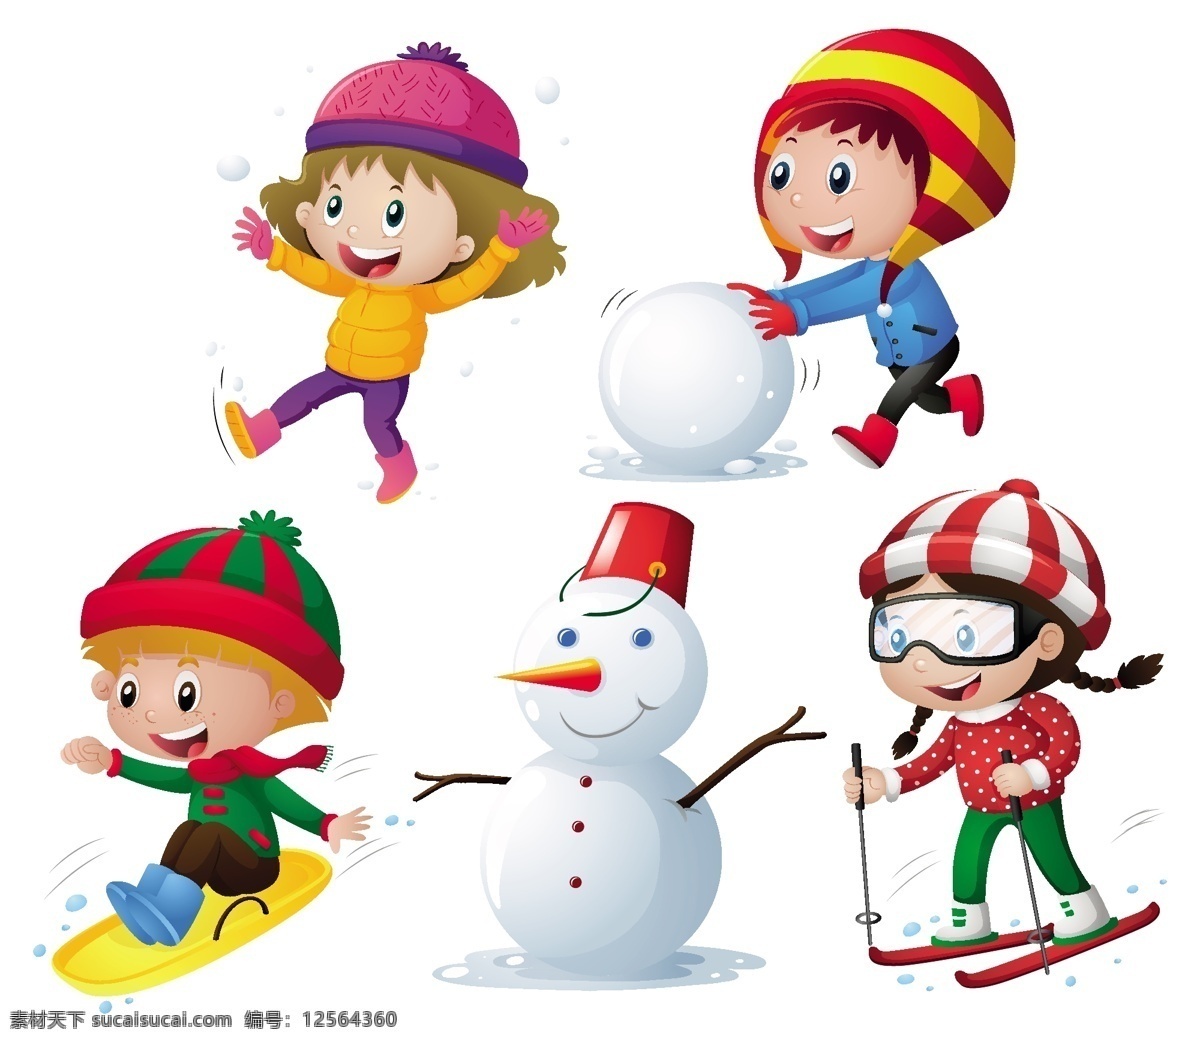 冬天儿童 卡通圣诞节 插画 冬季 冬雪 雪人 雪景 雪地 冬天 圣诞 圣诞节 圣诞节快乐 快乐 儿童 学生 冬天背景 卡通儿童 卡通设计